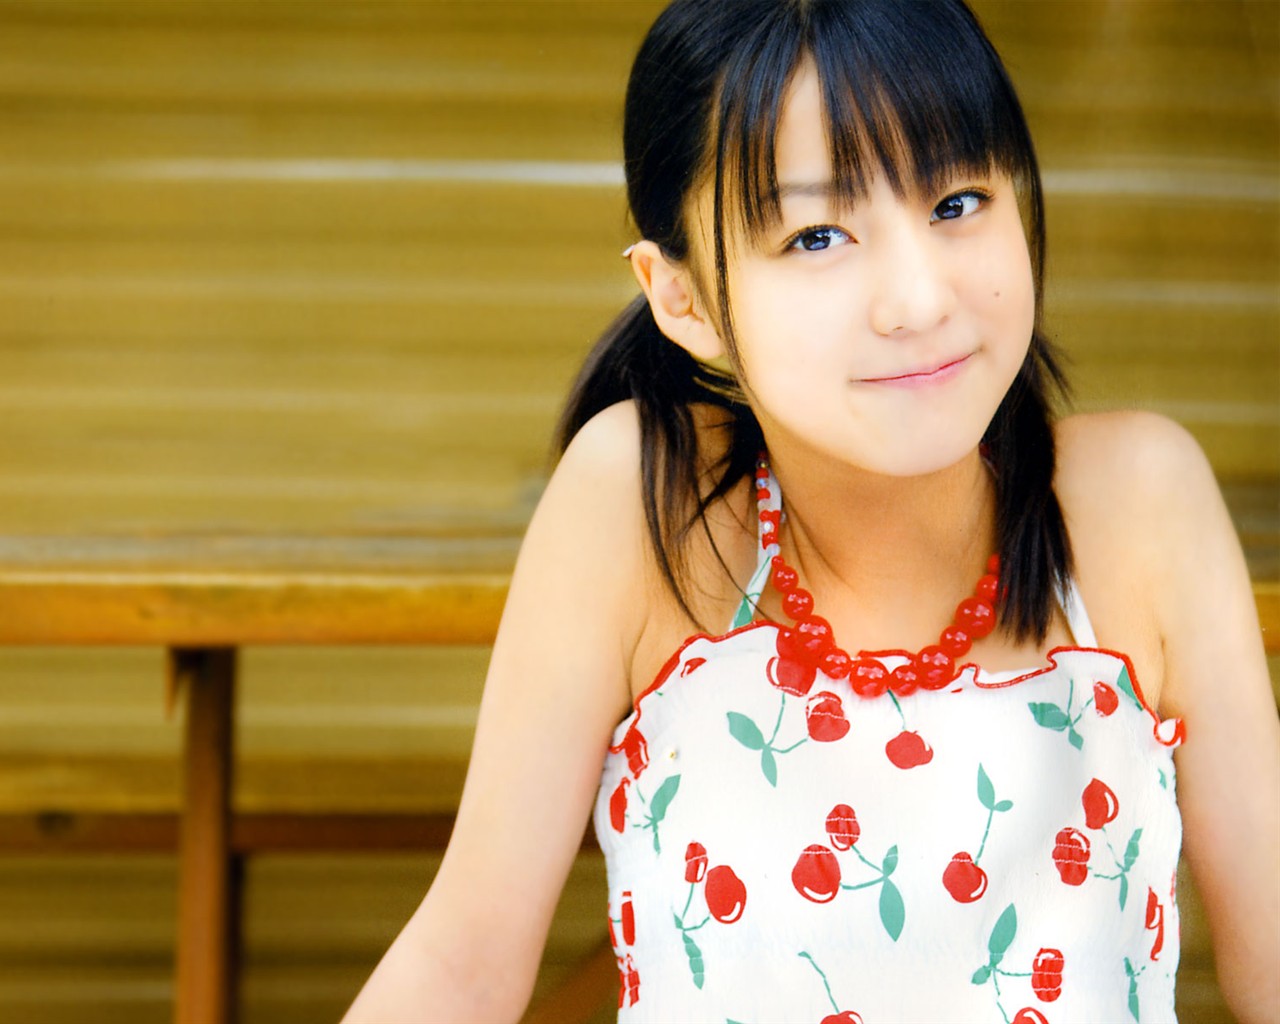 日本美少女组合Cute写真10 - 1280x1024